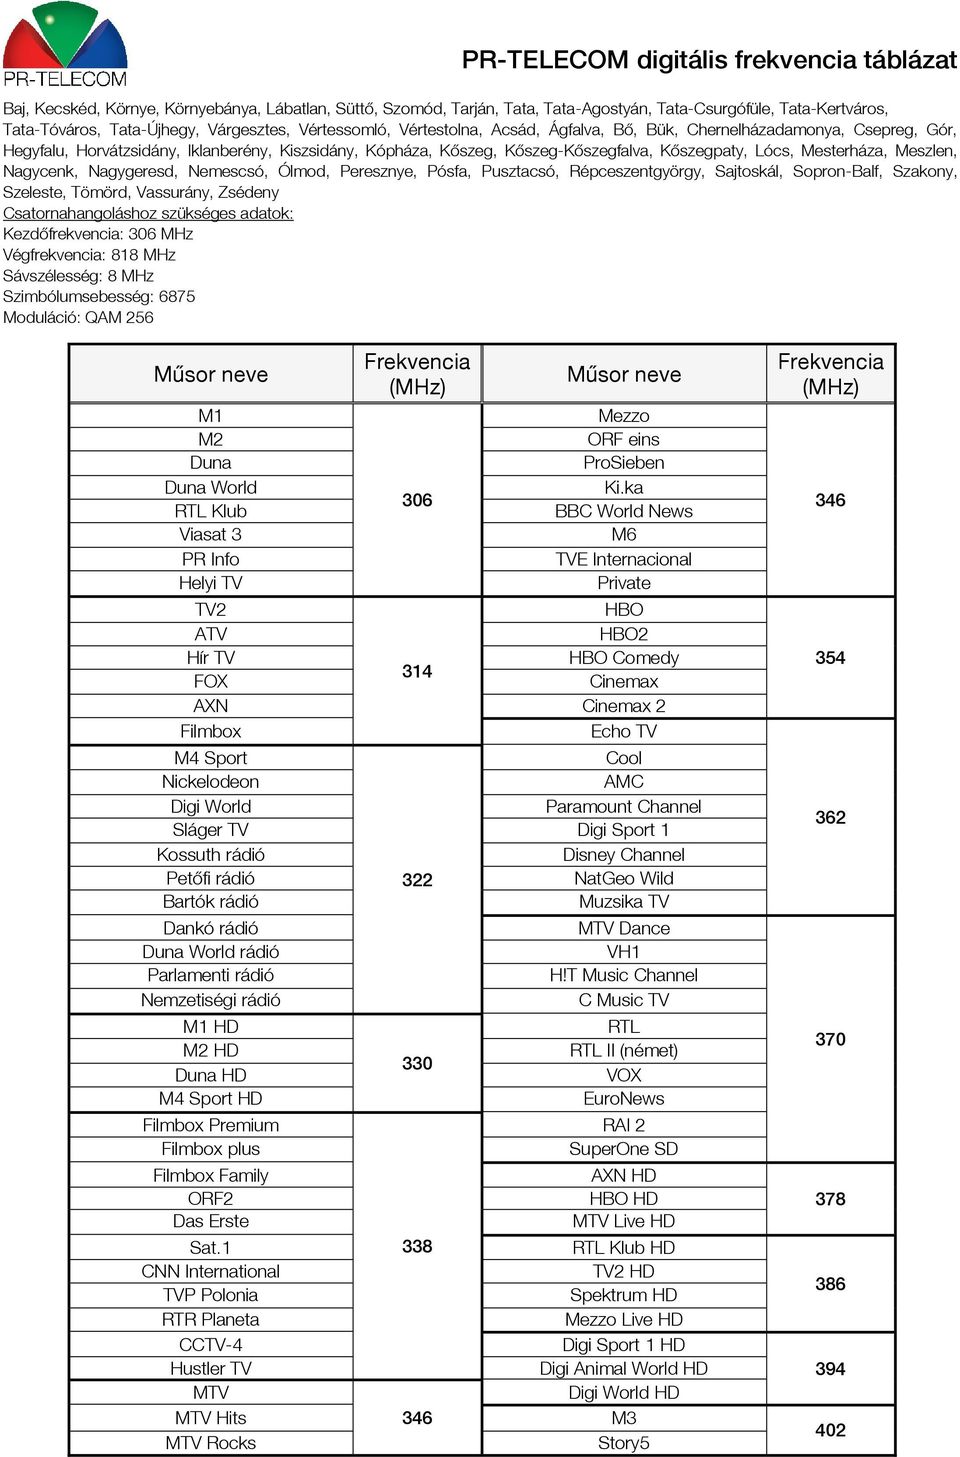 PR-TELECOM digitális frekvencia táblázat - PDF Ingyenes letöltés